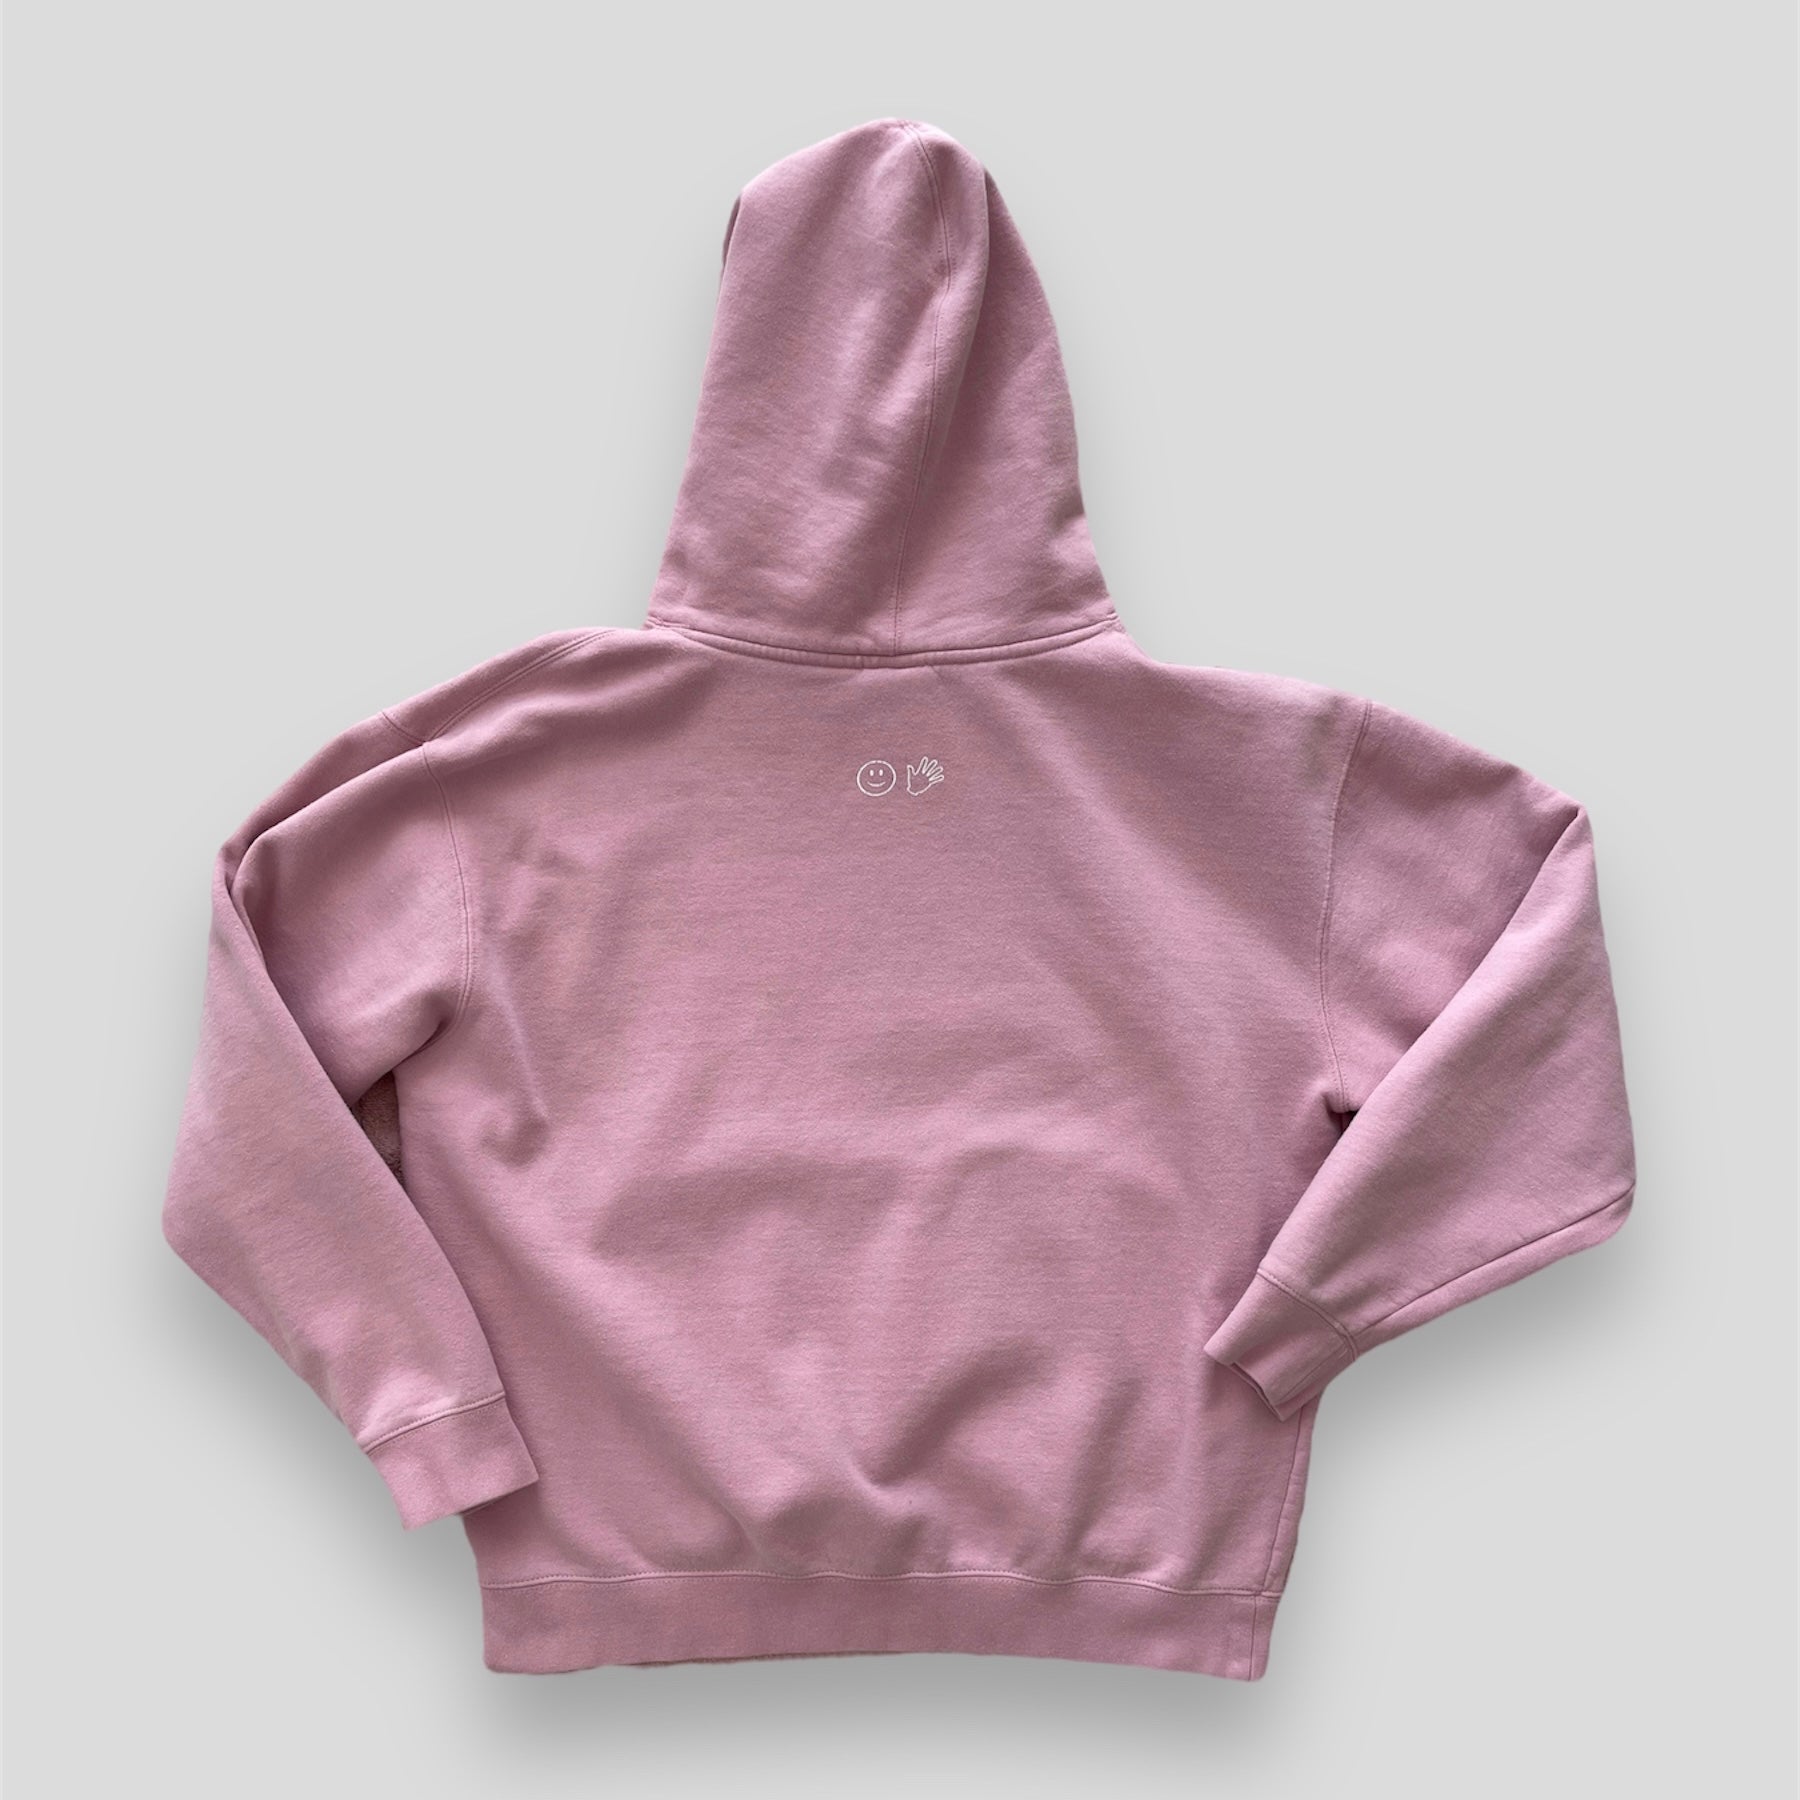 Original Pink Hoodie – Glossier